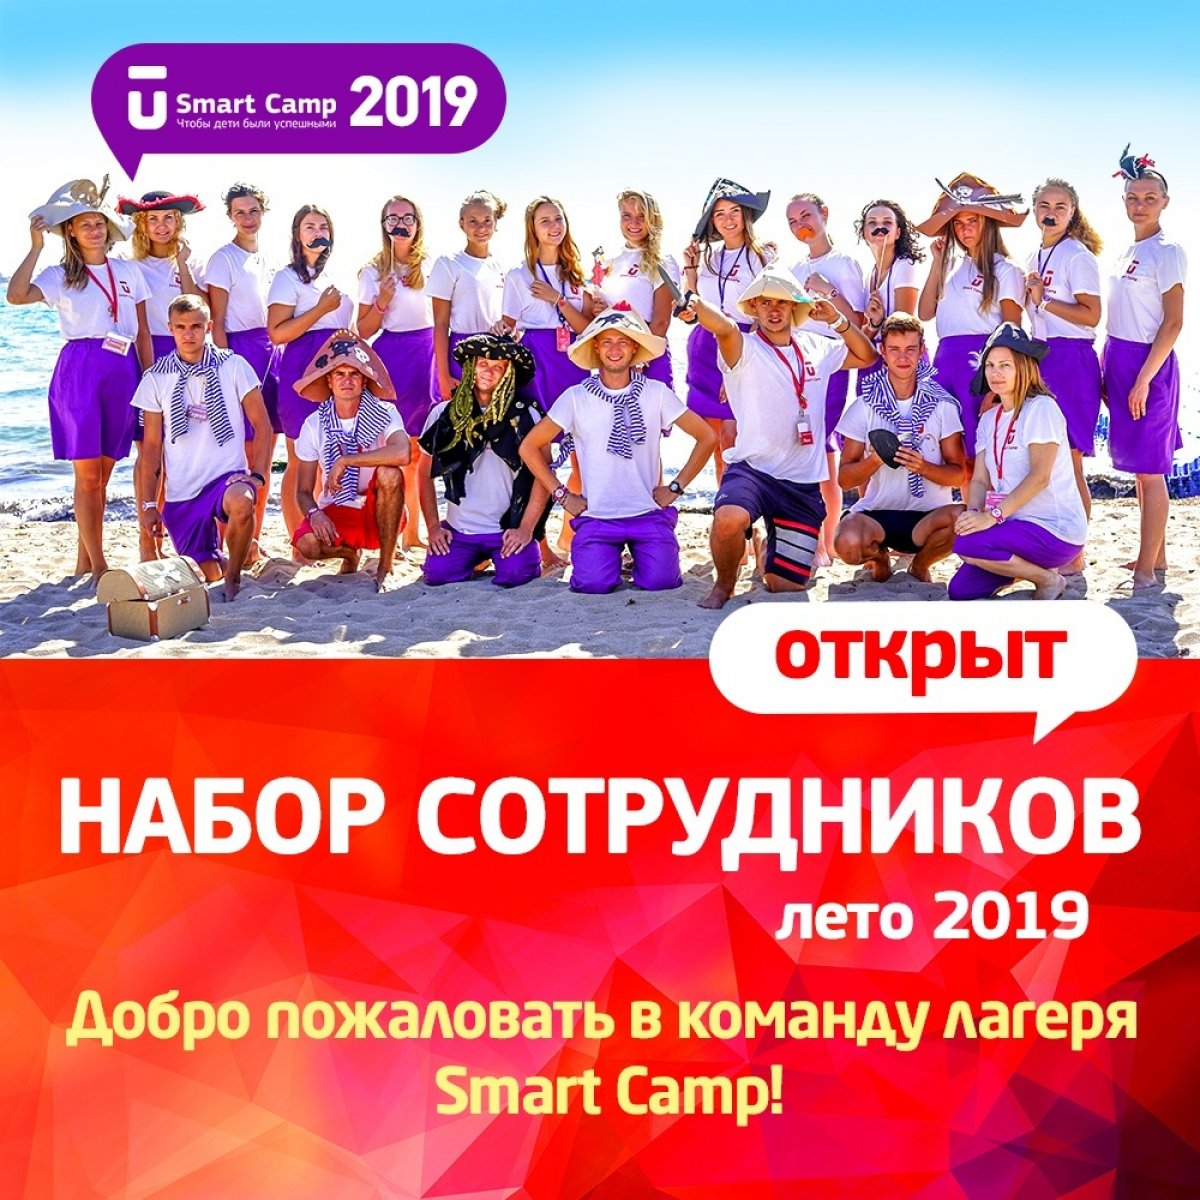 ⚡⚡⚡Самый крутой инновационный детский лагерь Smart Camp (Крым, Евпатория) набирает команду на лето-2019. Ты молодой и энергичный, любишь детей, море, солнце и Крым, тогда добро пожаловать в команду Smart Camp!